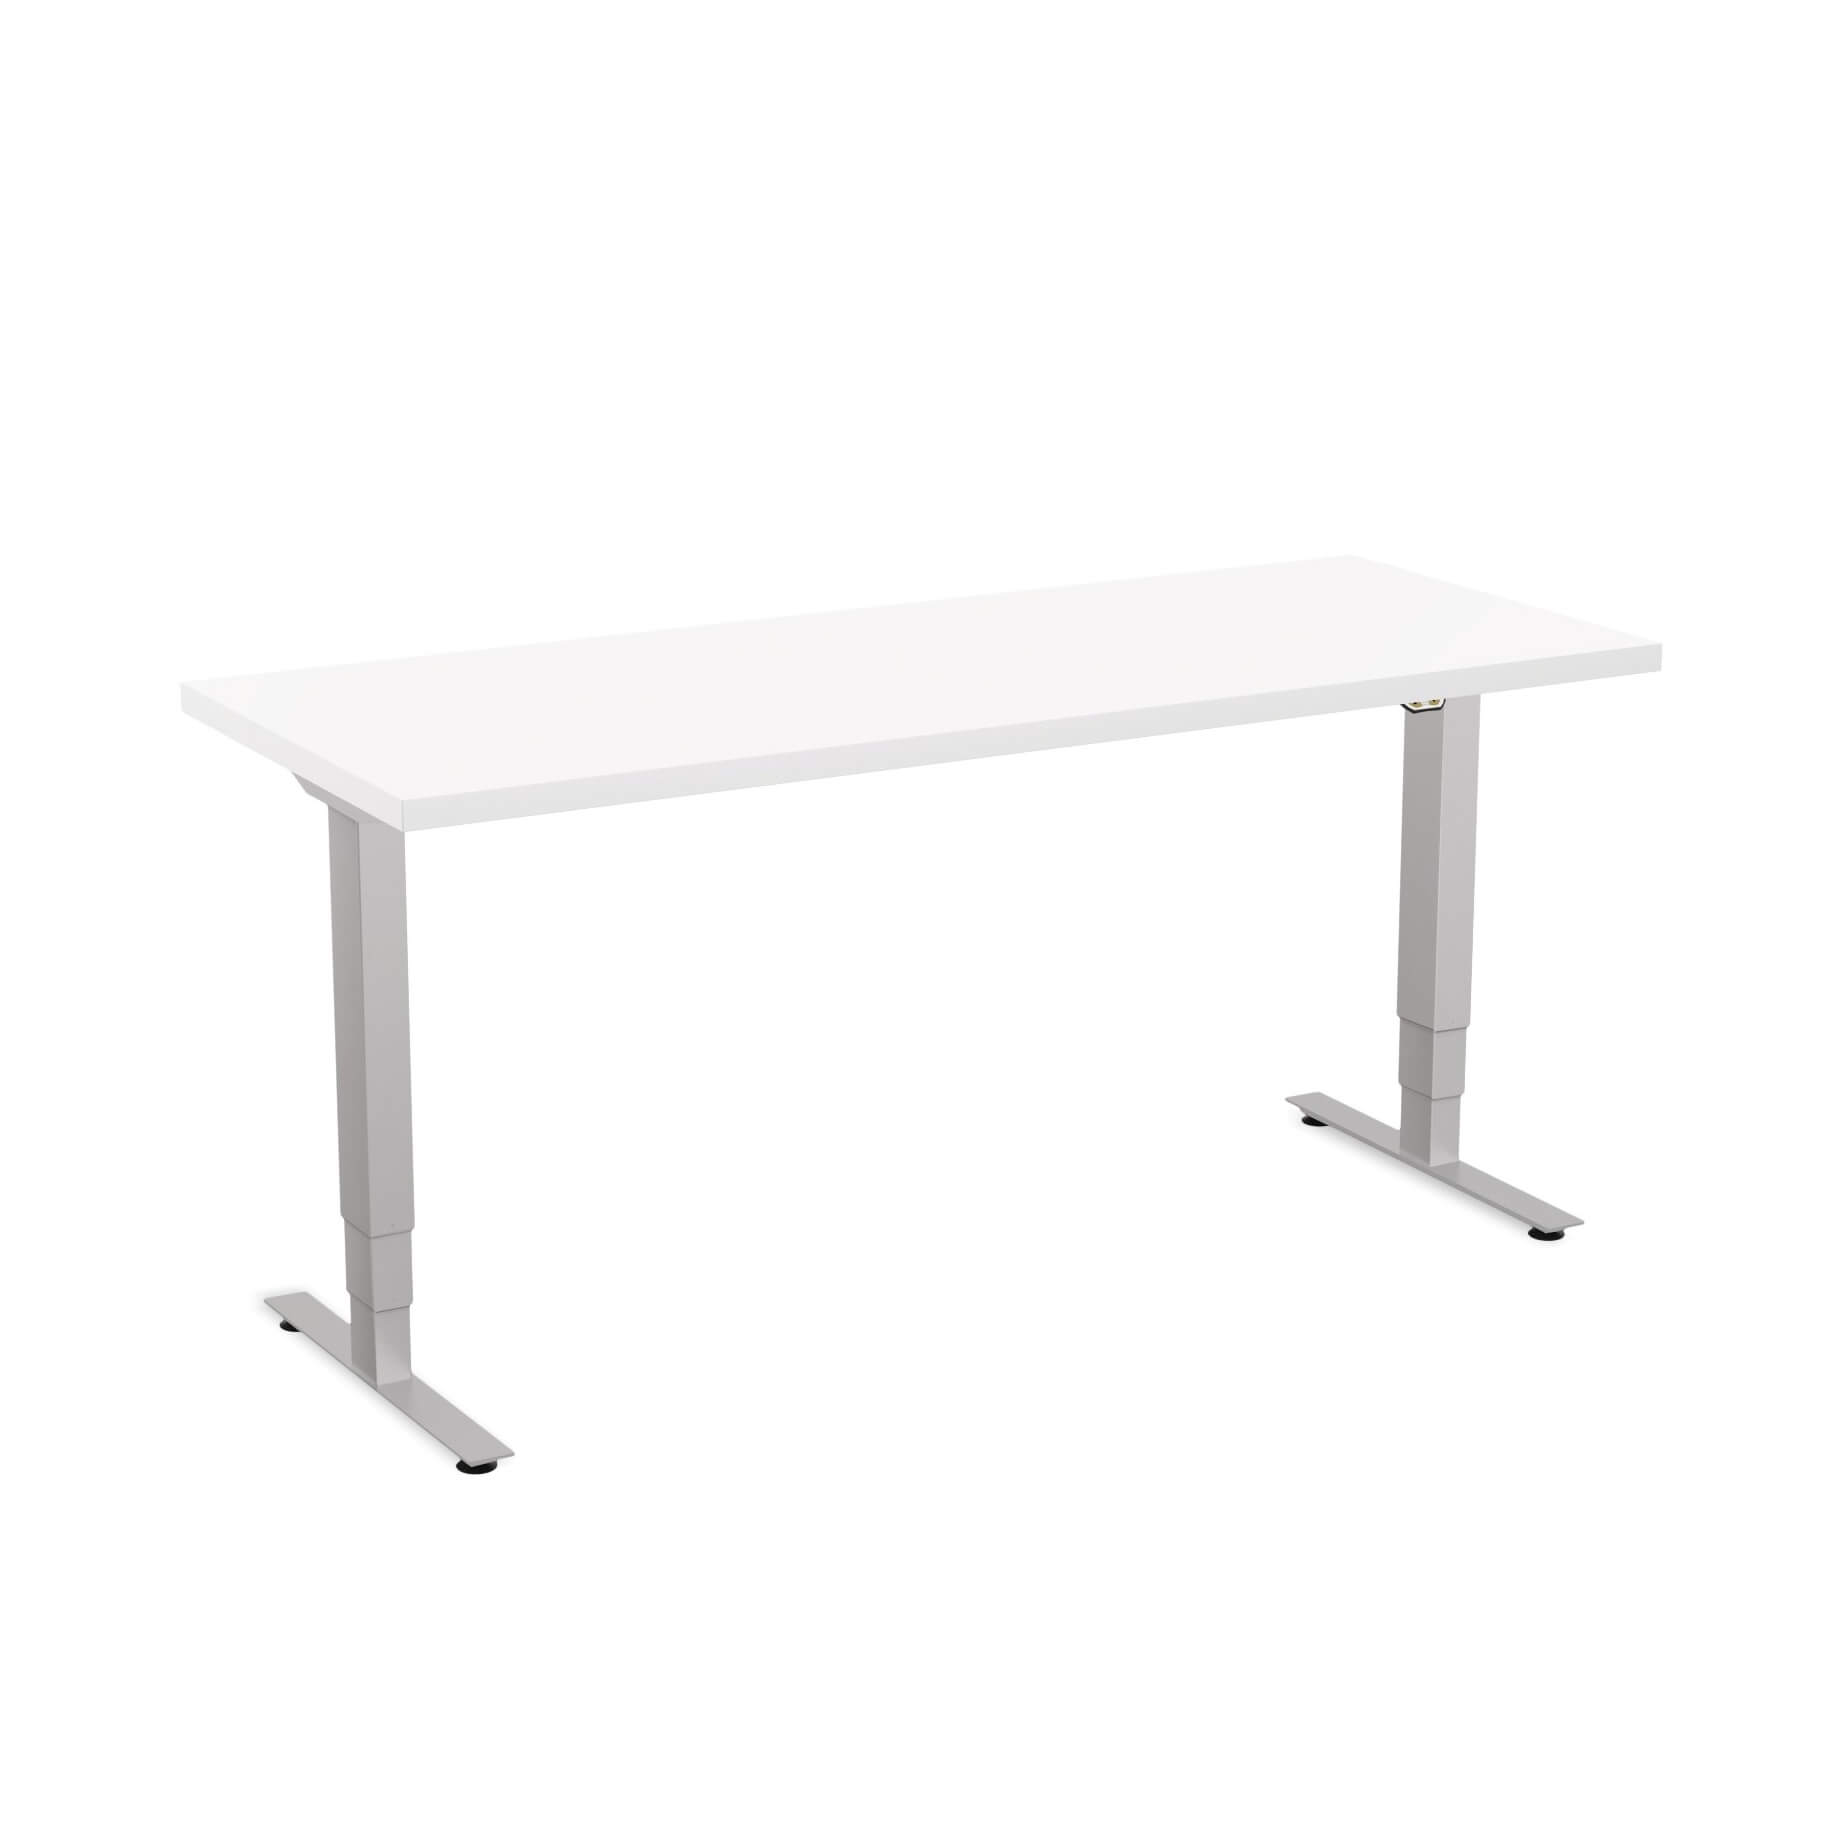 Sit stand desk adjustable CUB 1D PATR 2460 WH EPS